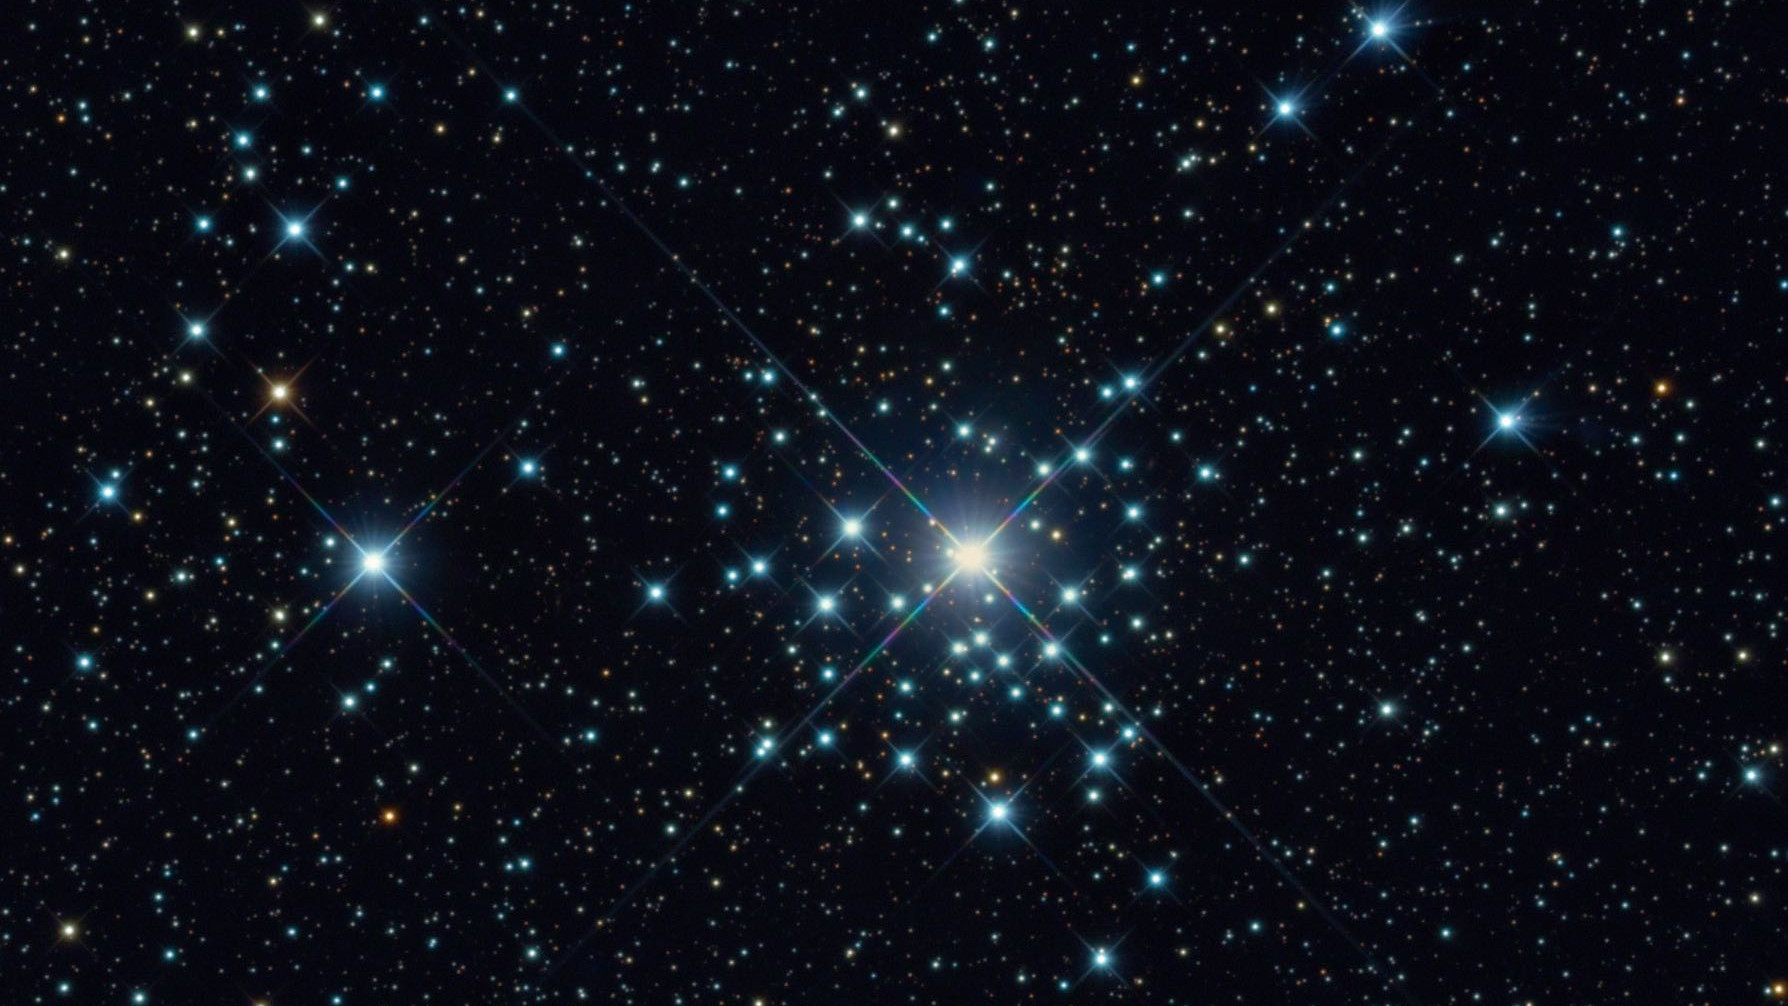 Der Sternhaufen NGC 2362 im Sternbild Großer Hund aufgenommen mit einem 20 Zoll RC-Teleskop bei 4492mm Brennweite.
Bernhard Hubl und das CEDIC Team / CCD Guide